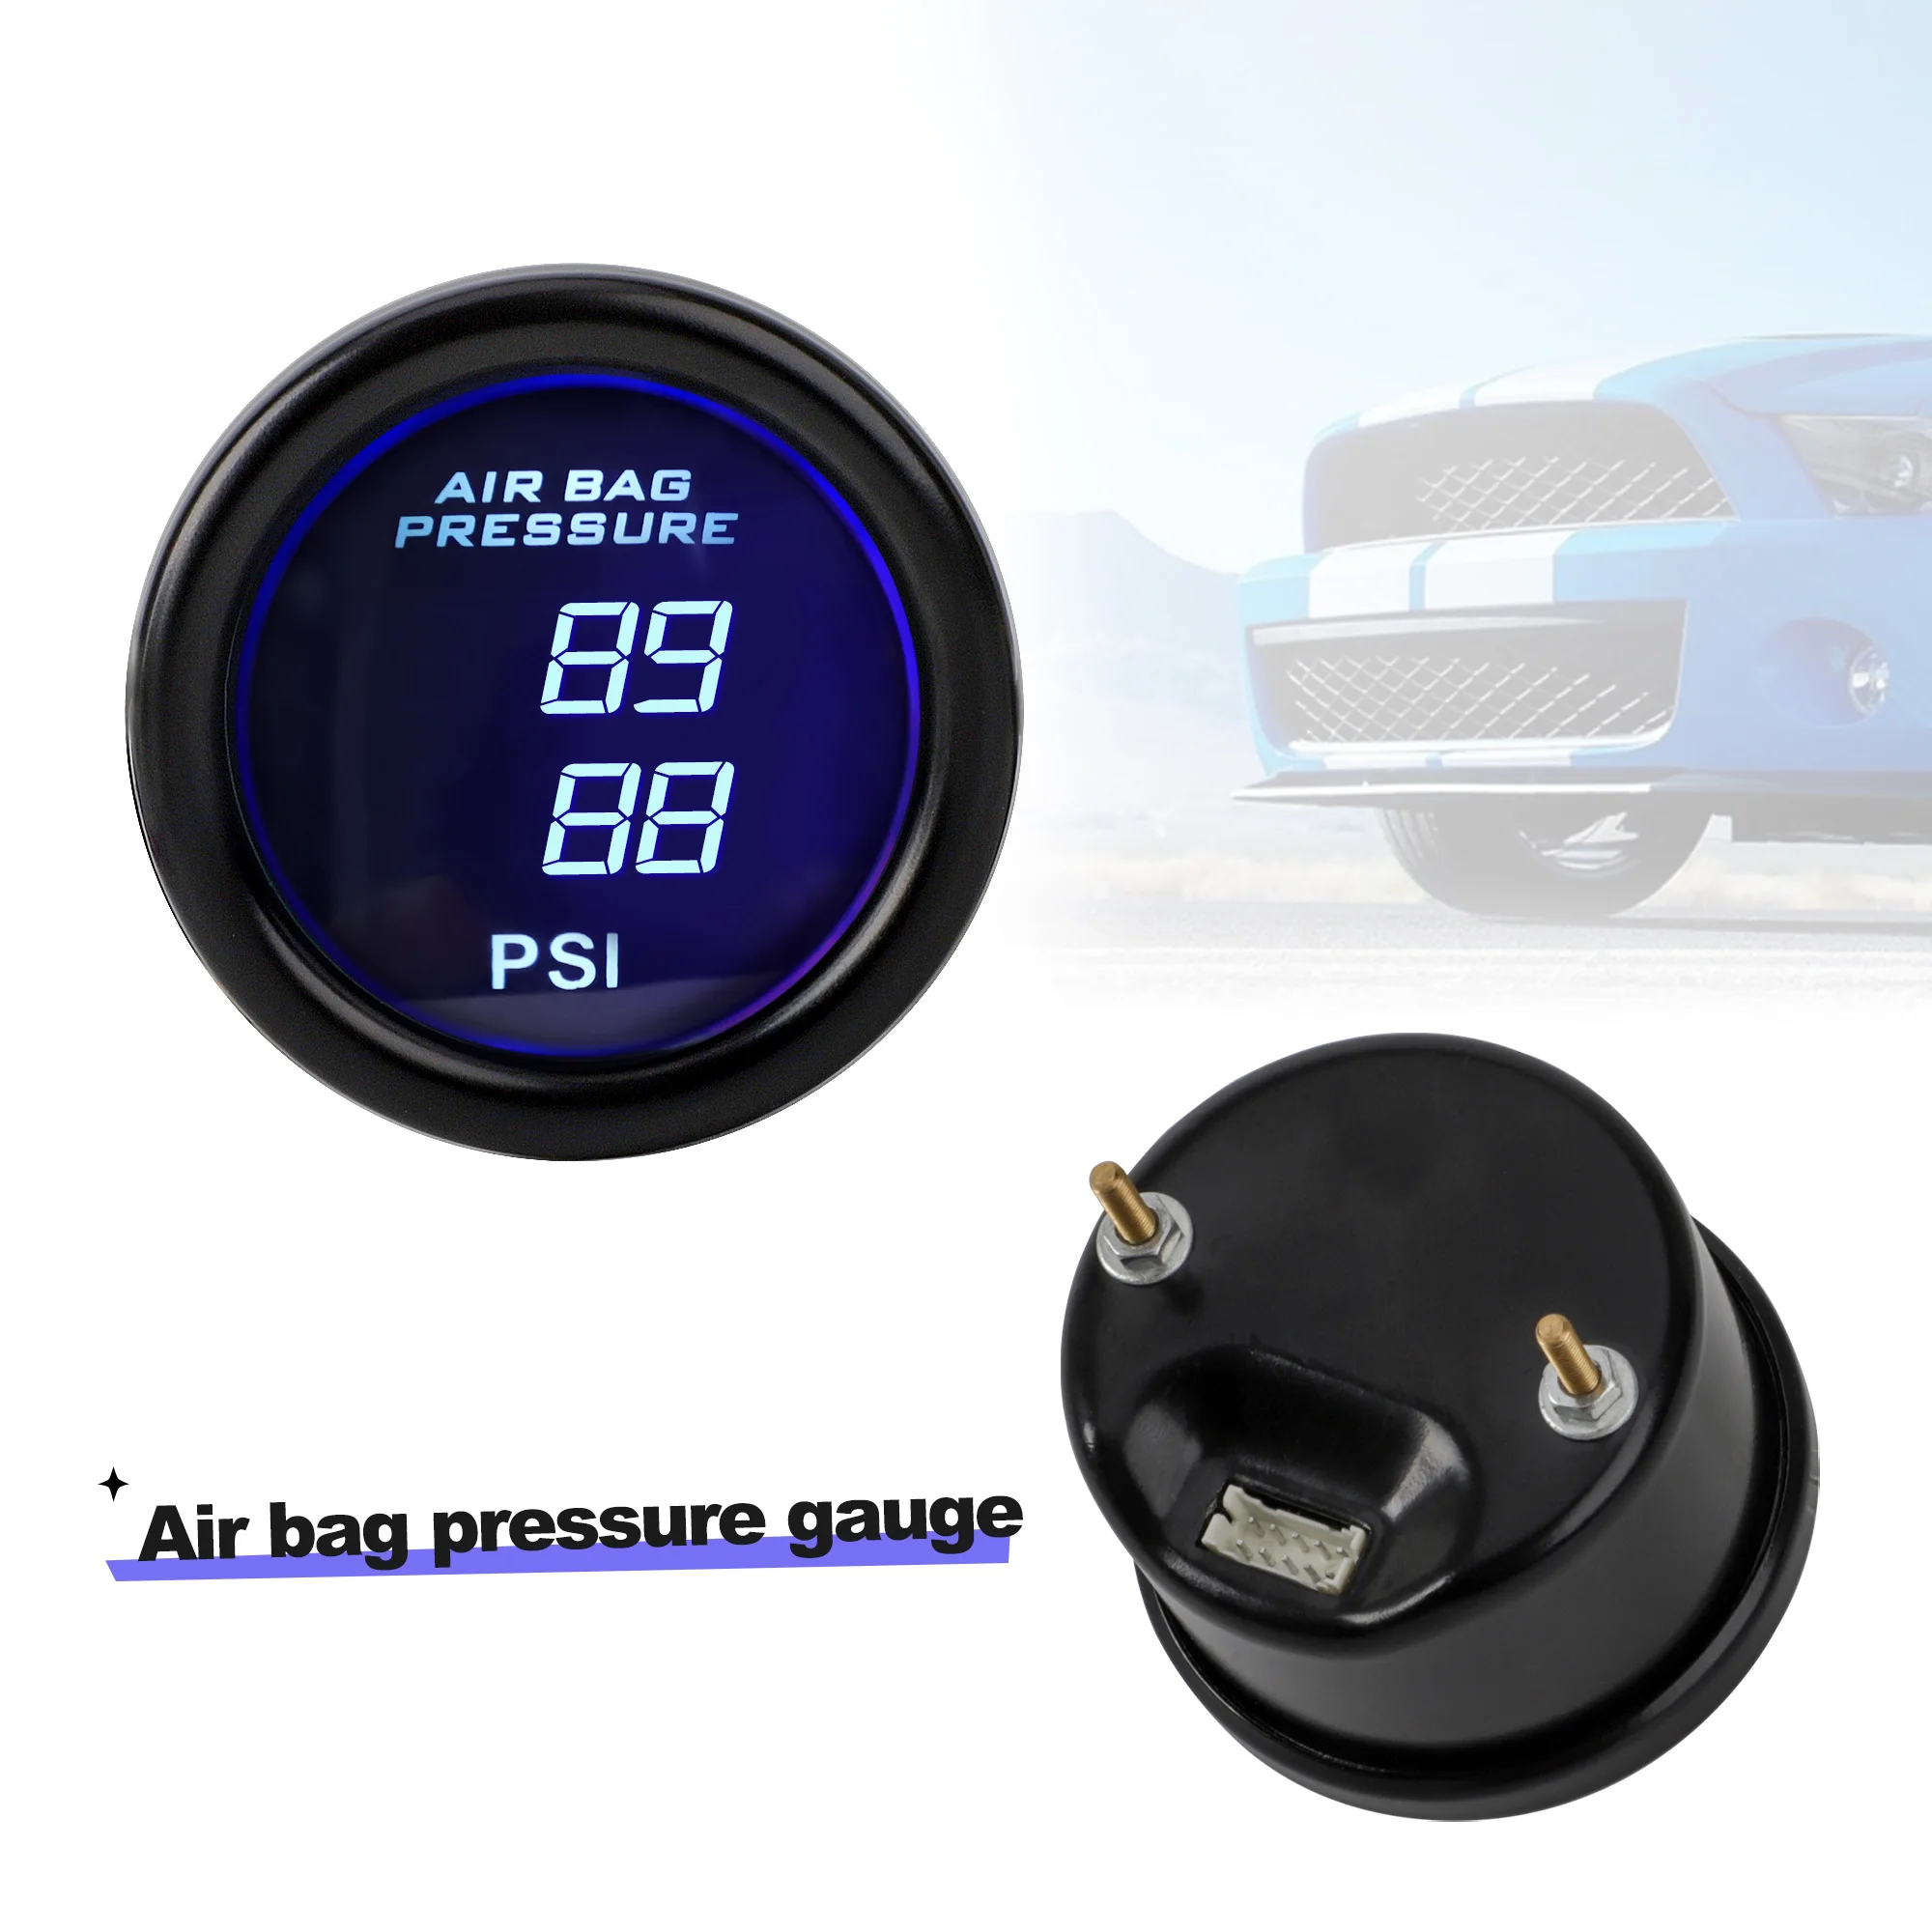 Spension pressure gauge 52mm blue led dual digital display air ride air press with 2pcs thumb200